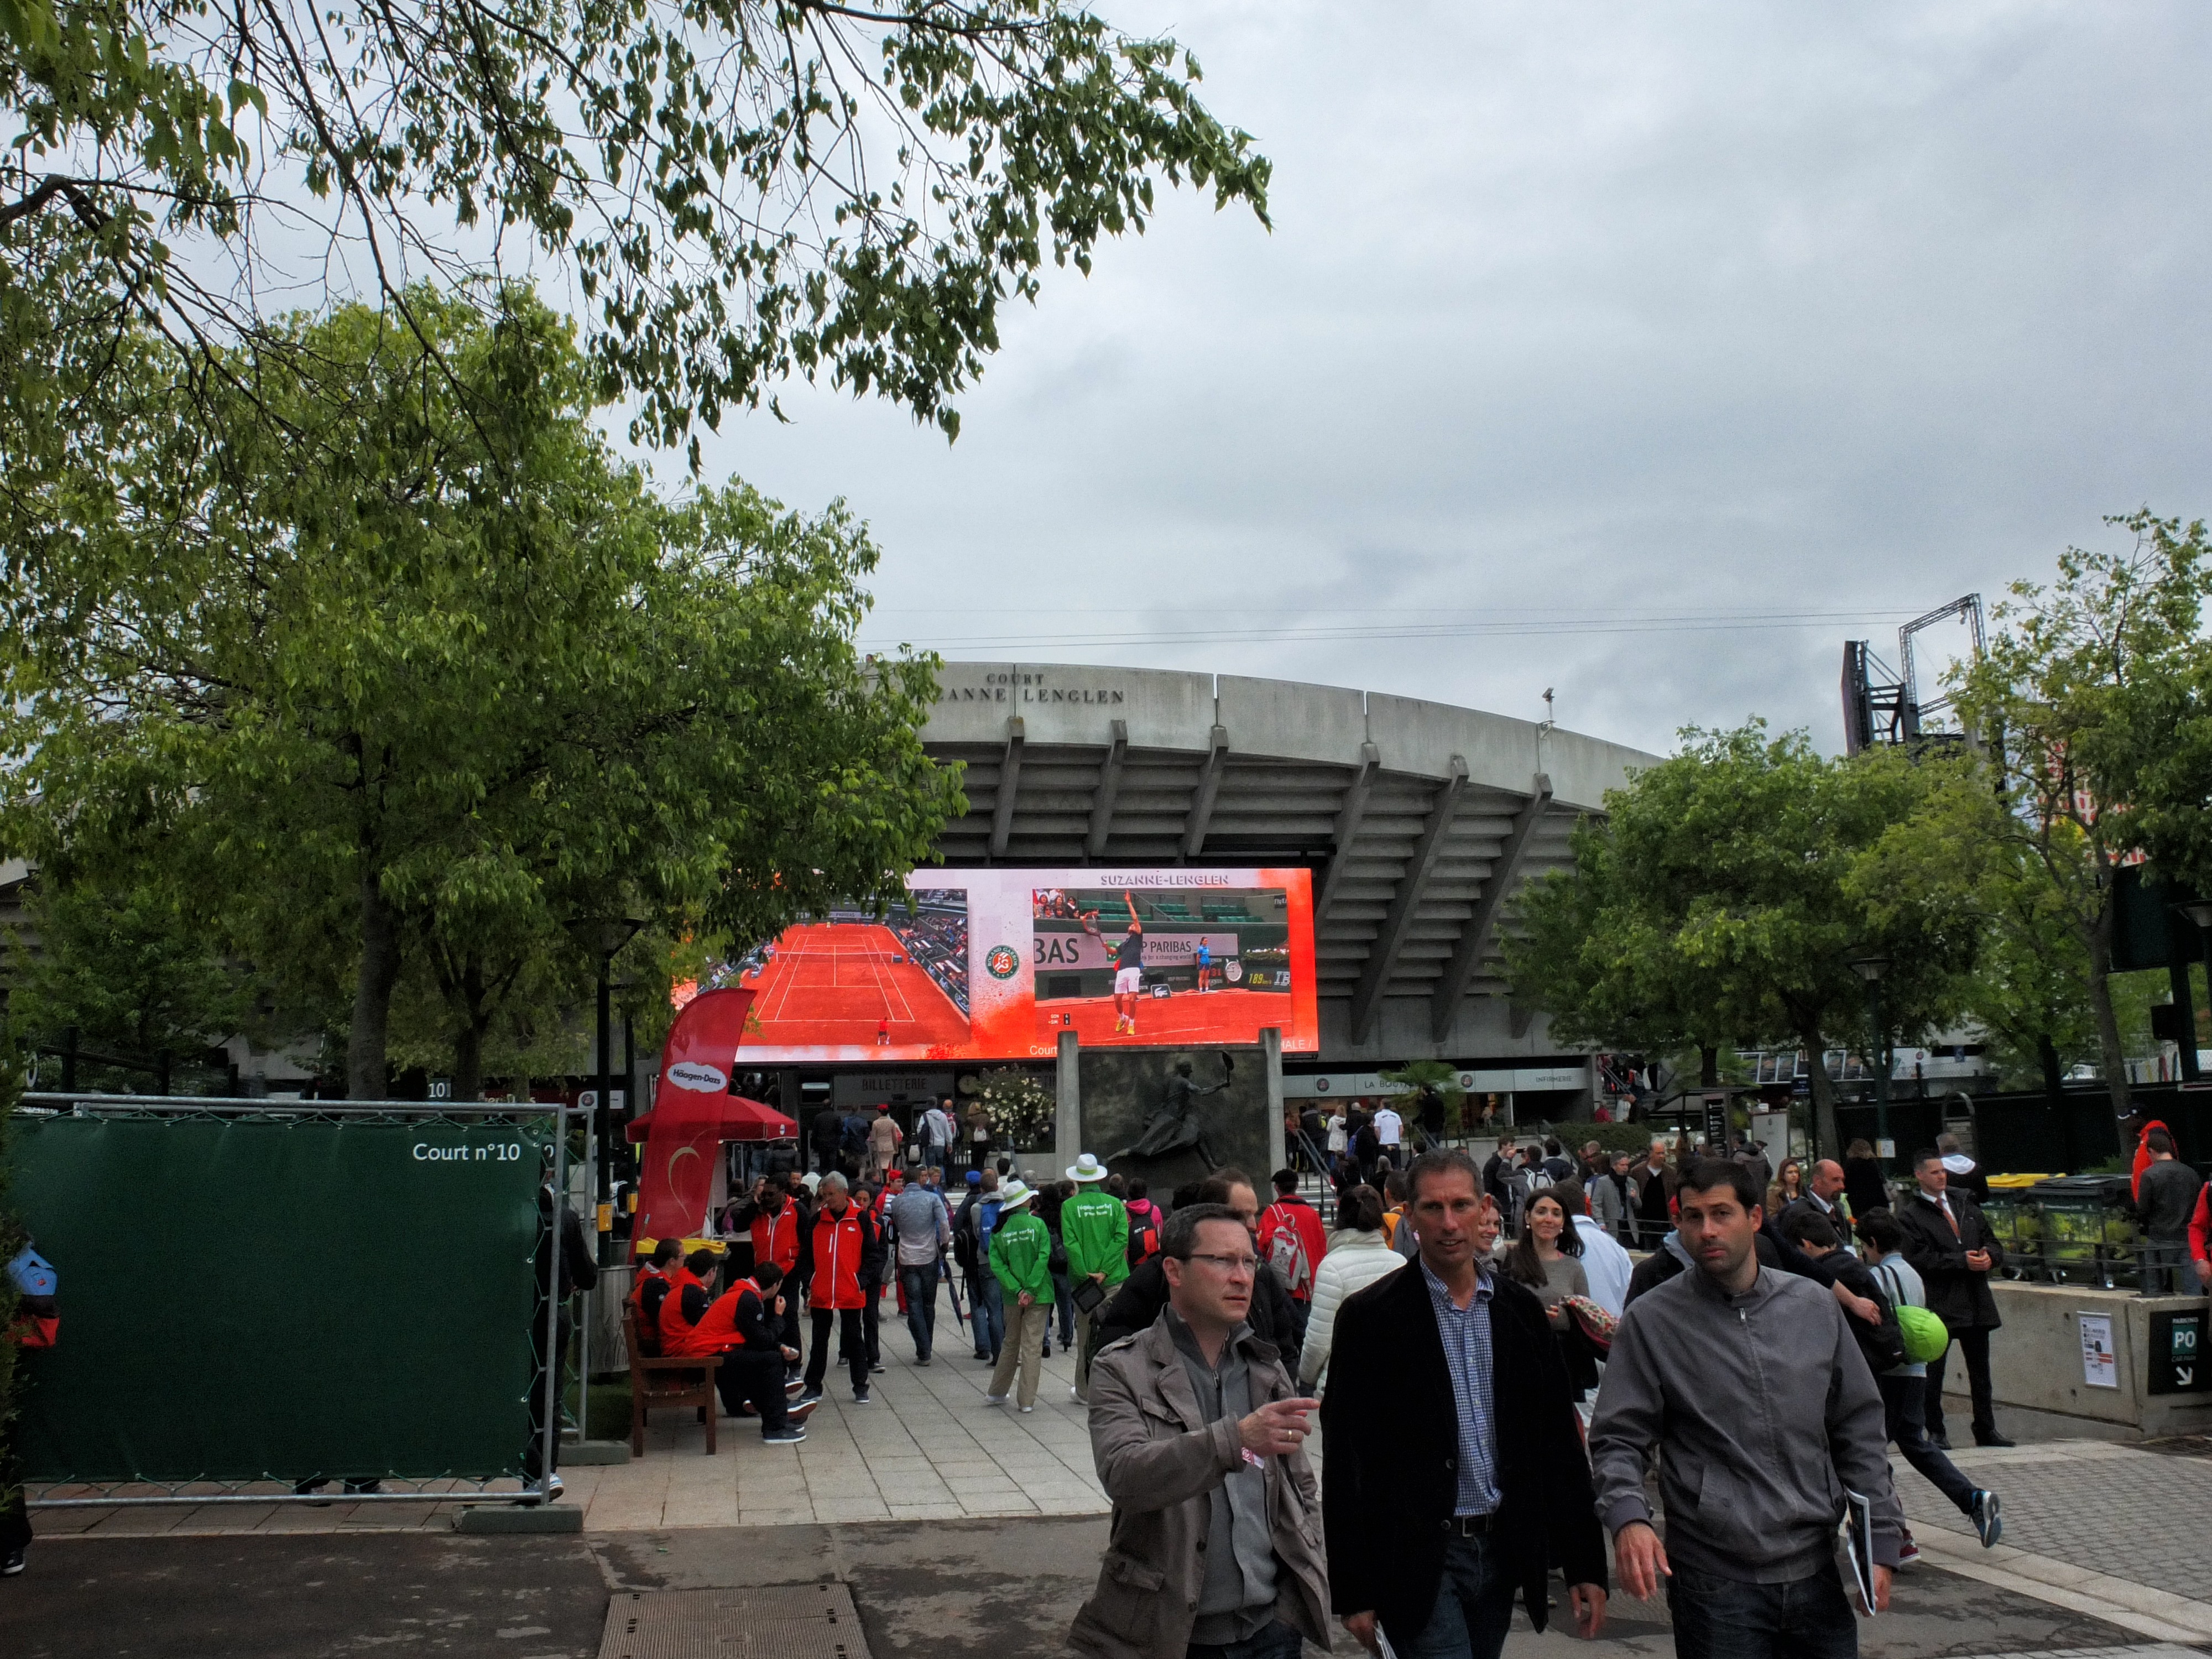 Stade de Roland Garros